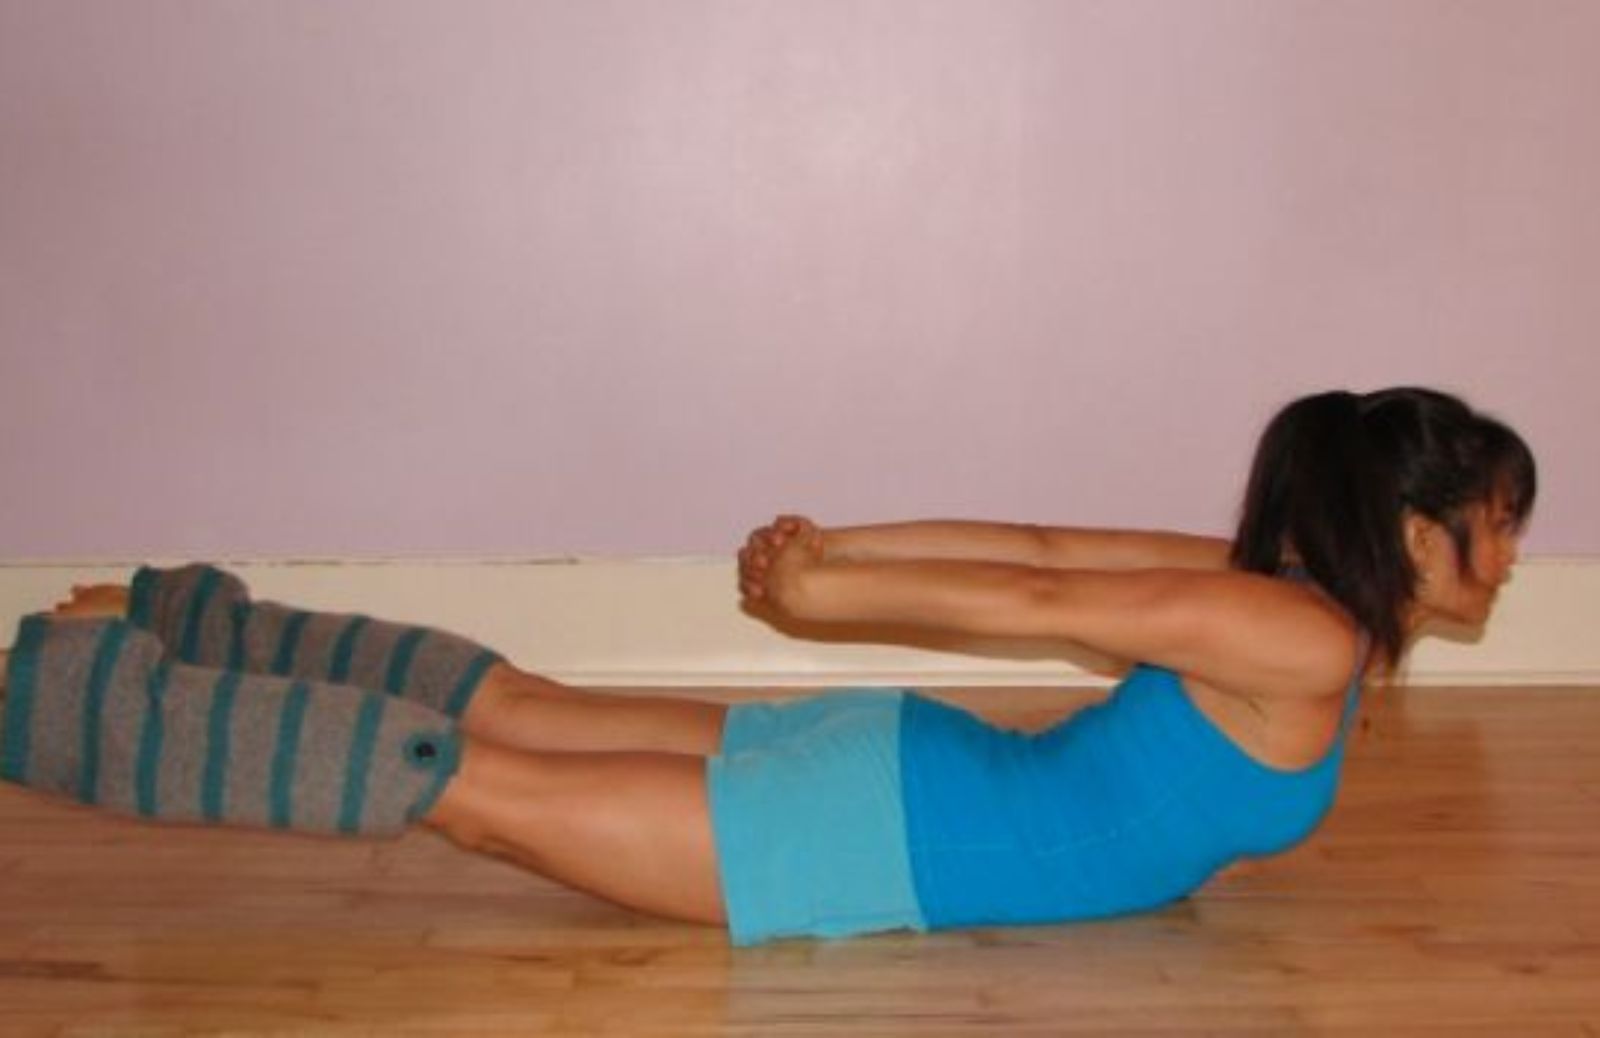 Come imparare a fare yoga. Asana in posizione prona: la locusta